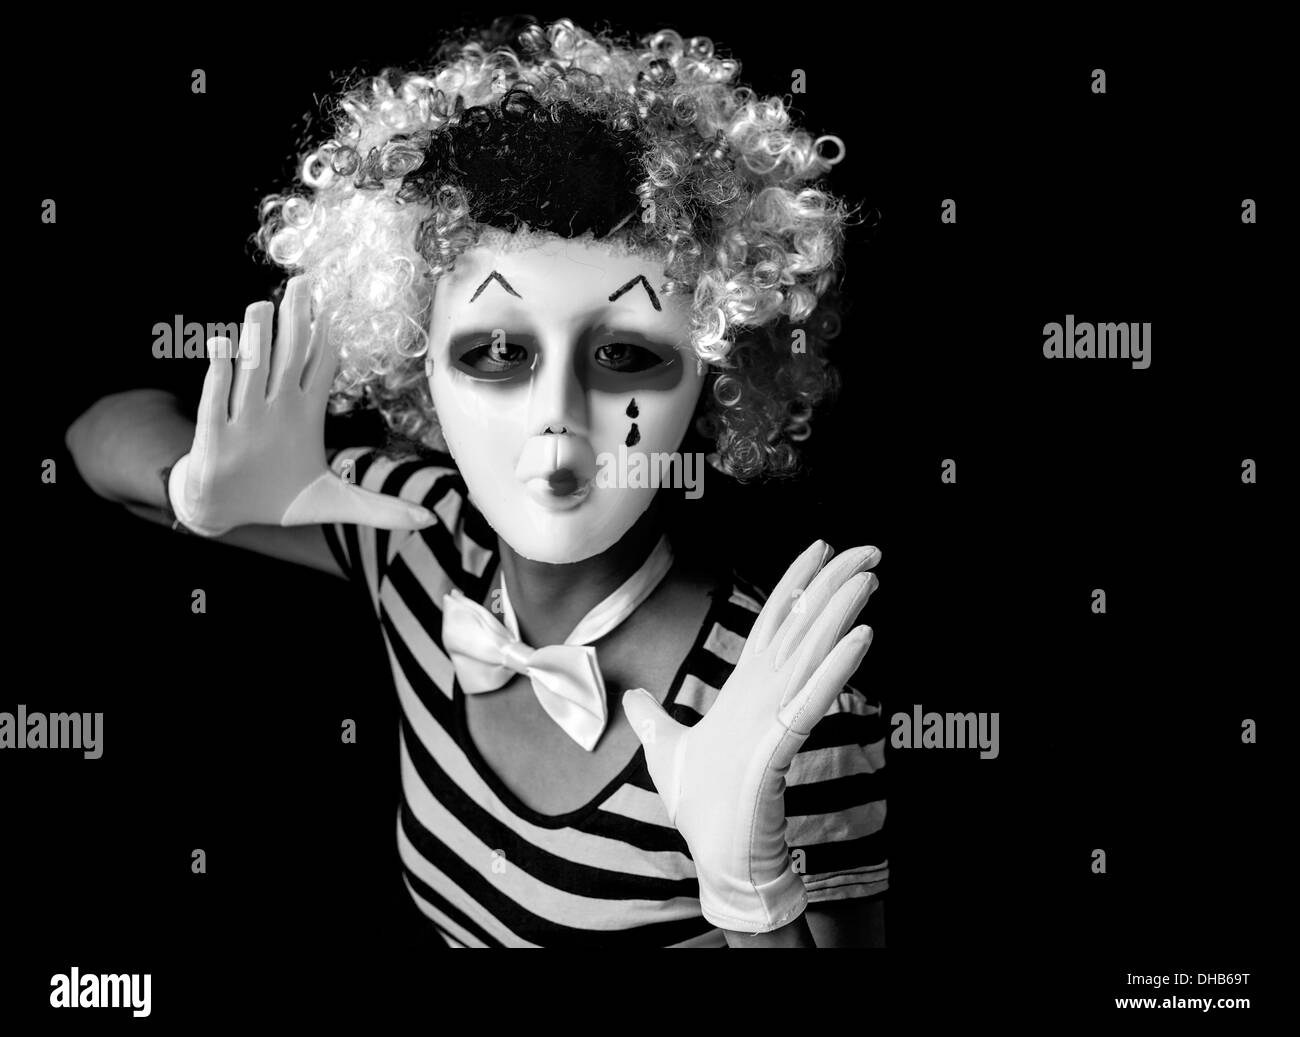 Scary clown mime portant masque et perruque Banque D'Images